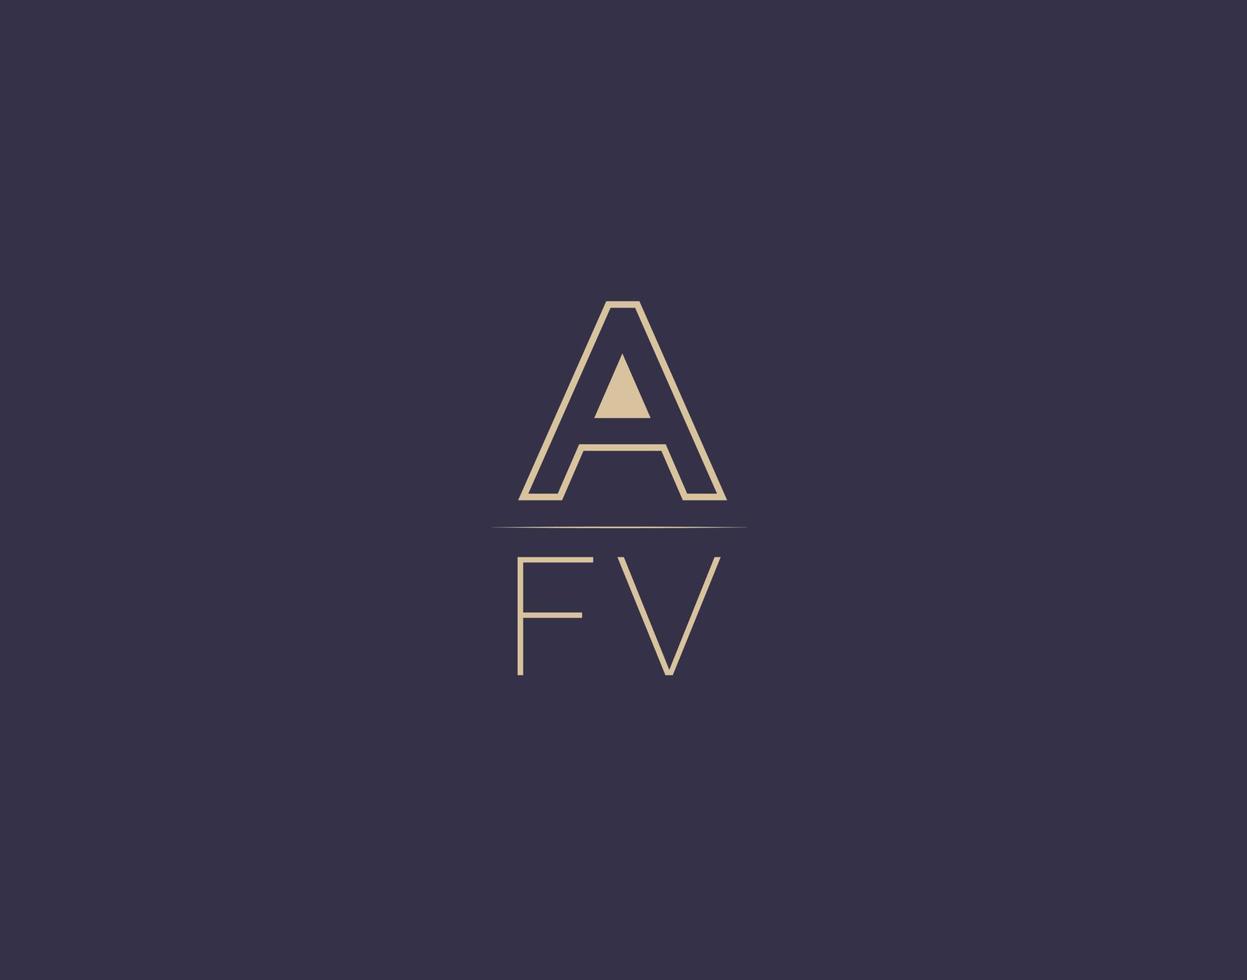 afv carta logo diseño moderno minimalista vector imágenes